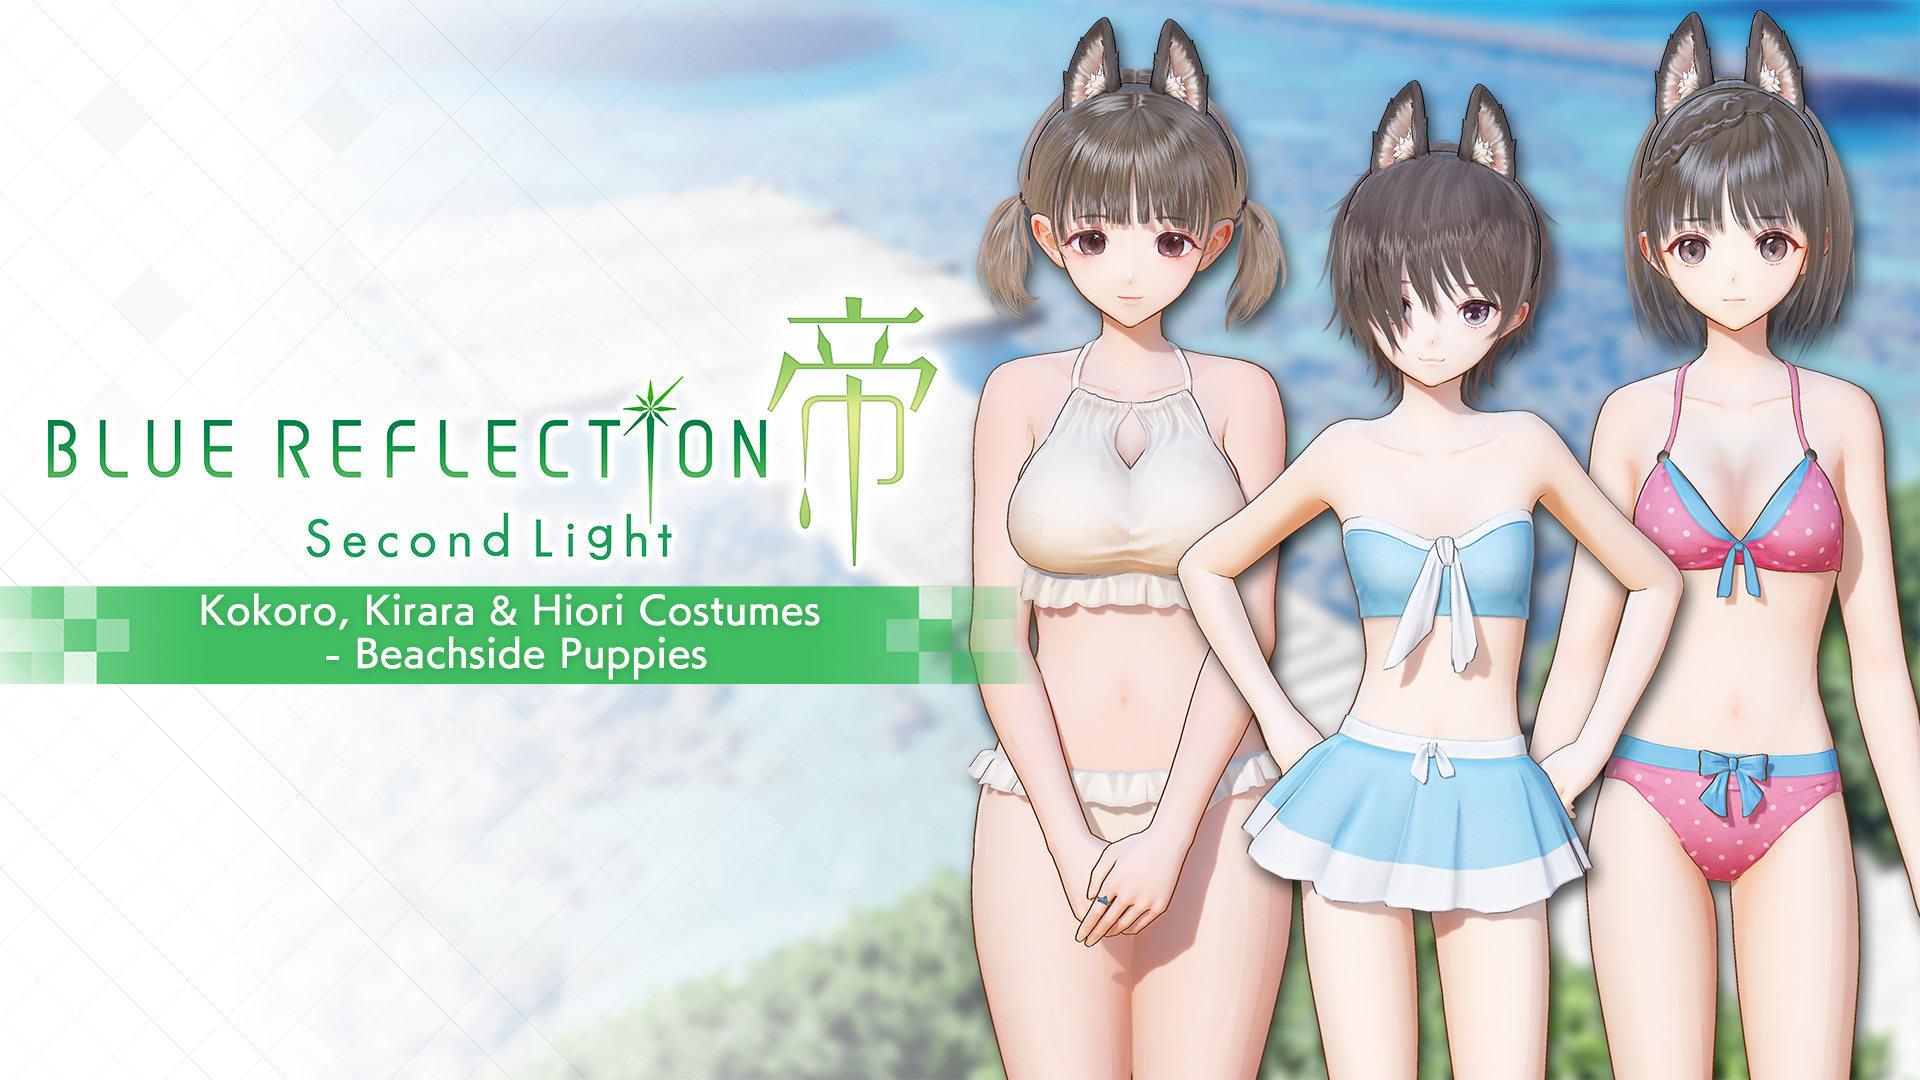 Kokoro, Kirara & Hiori Costumes - Beachside Puppies